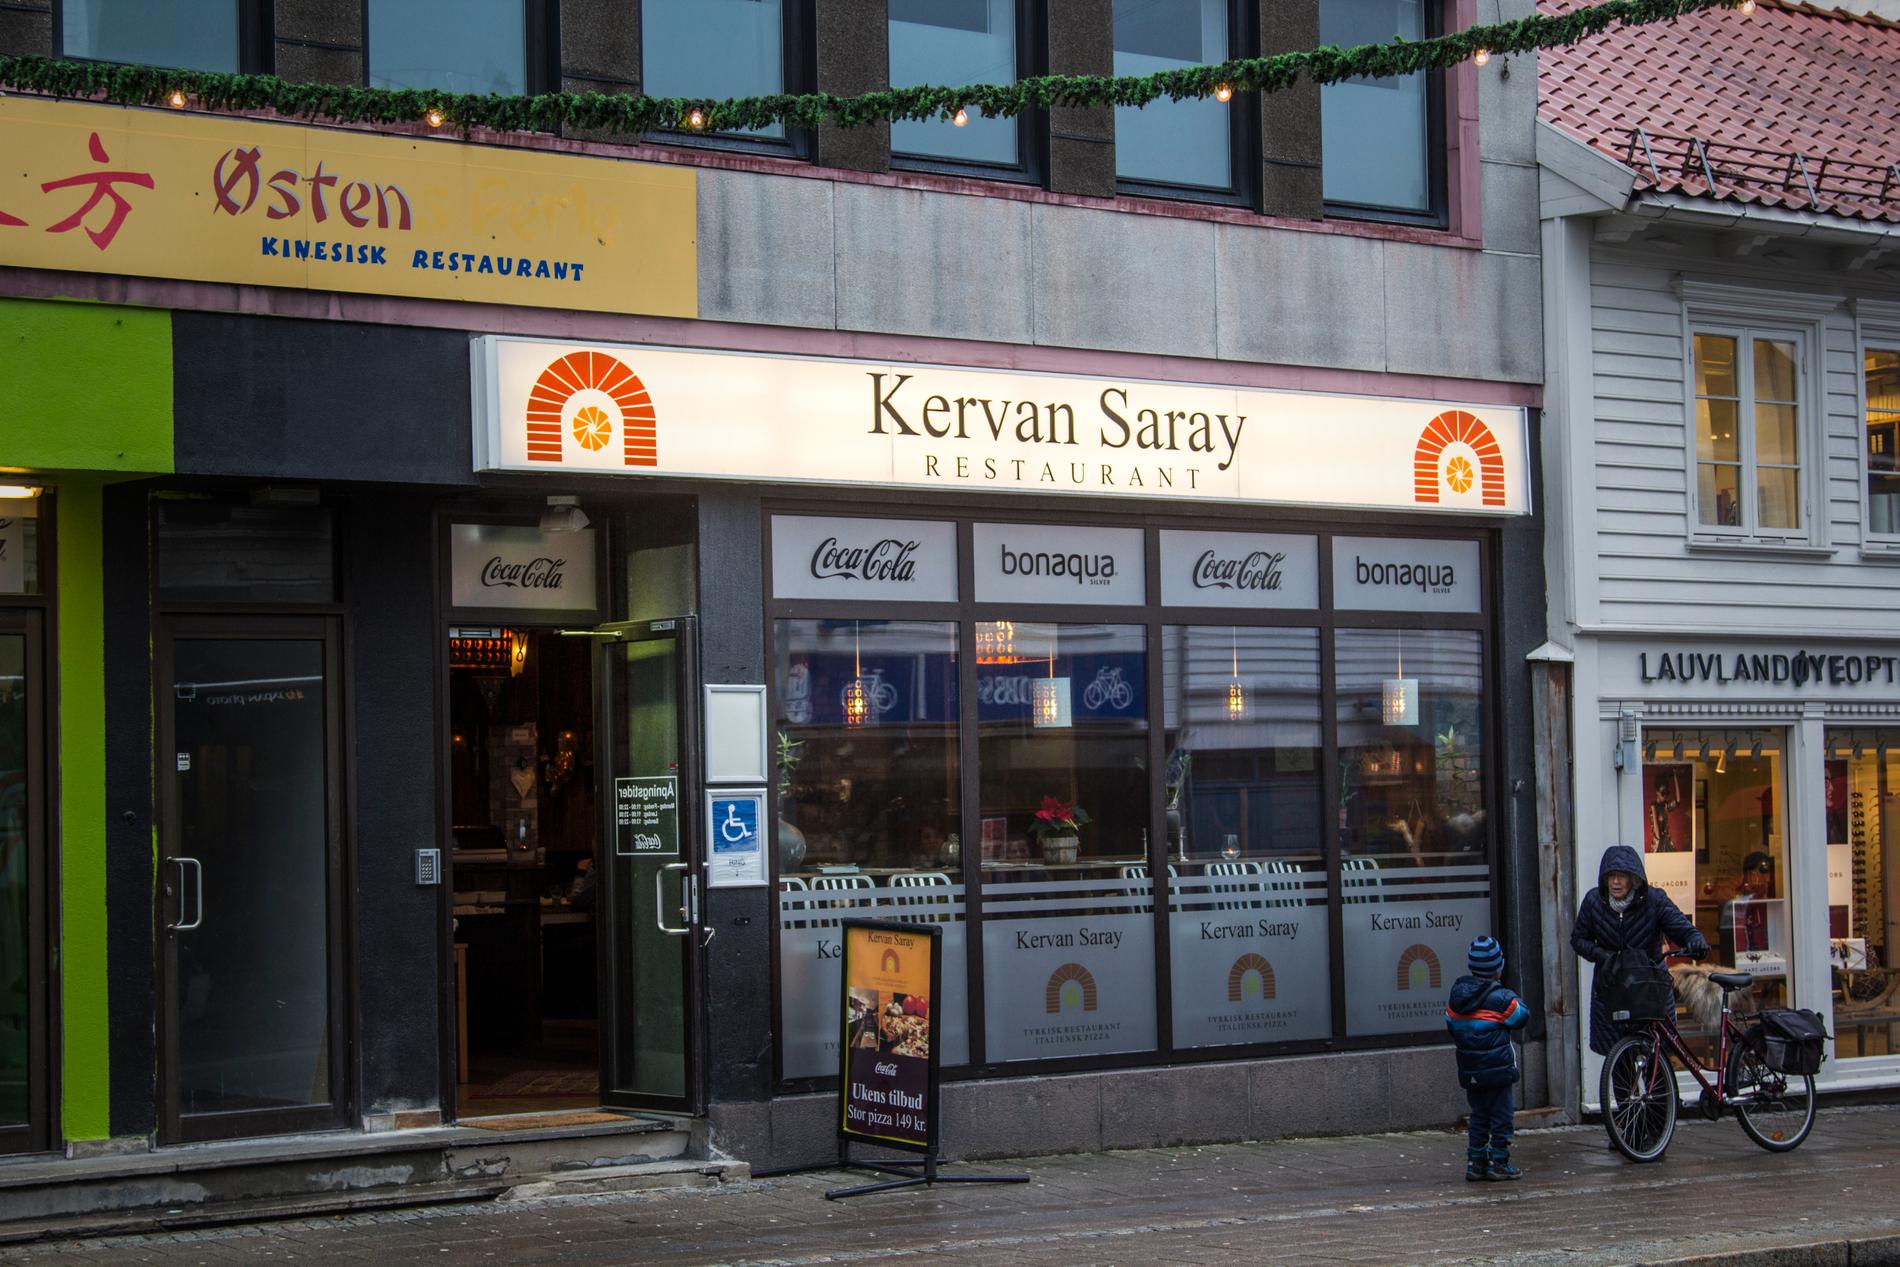 Kervan Saray ligger i Henrik Wergelands gate. Foto: Magnus Nødland Skogedal